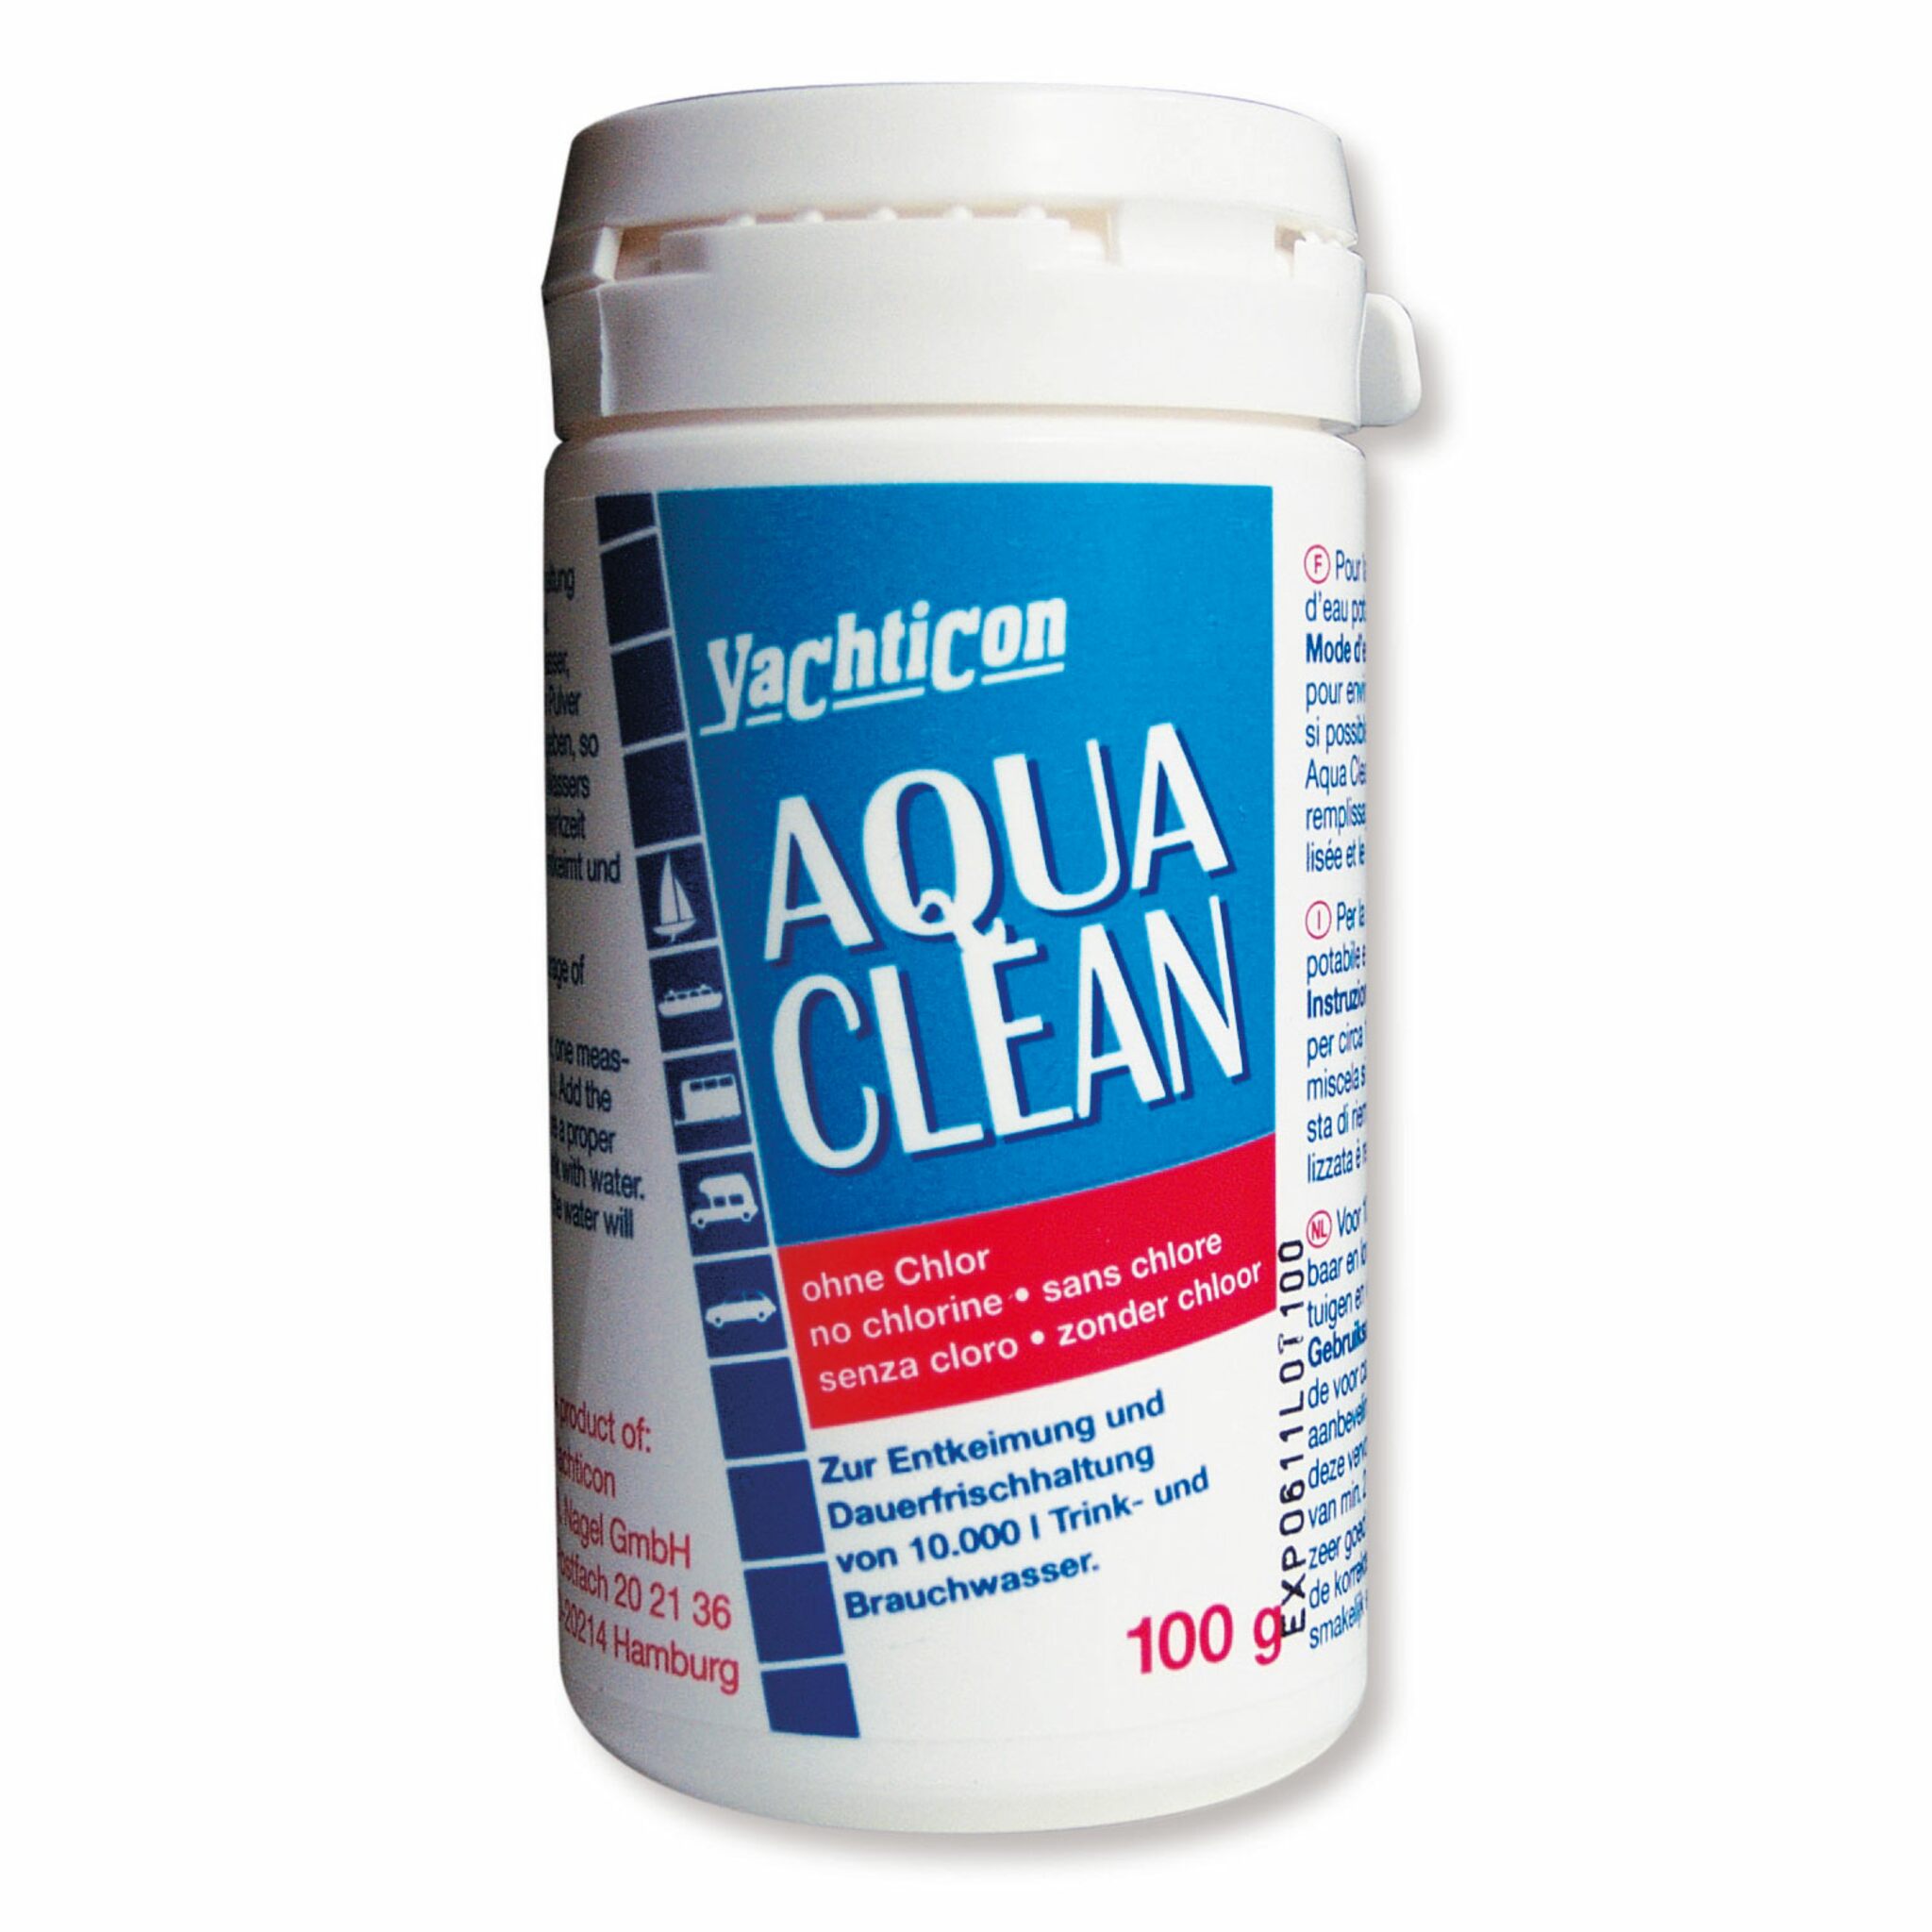 Yachticon Aqua Clean 100 g Pulver, reicht für 10000 l